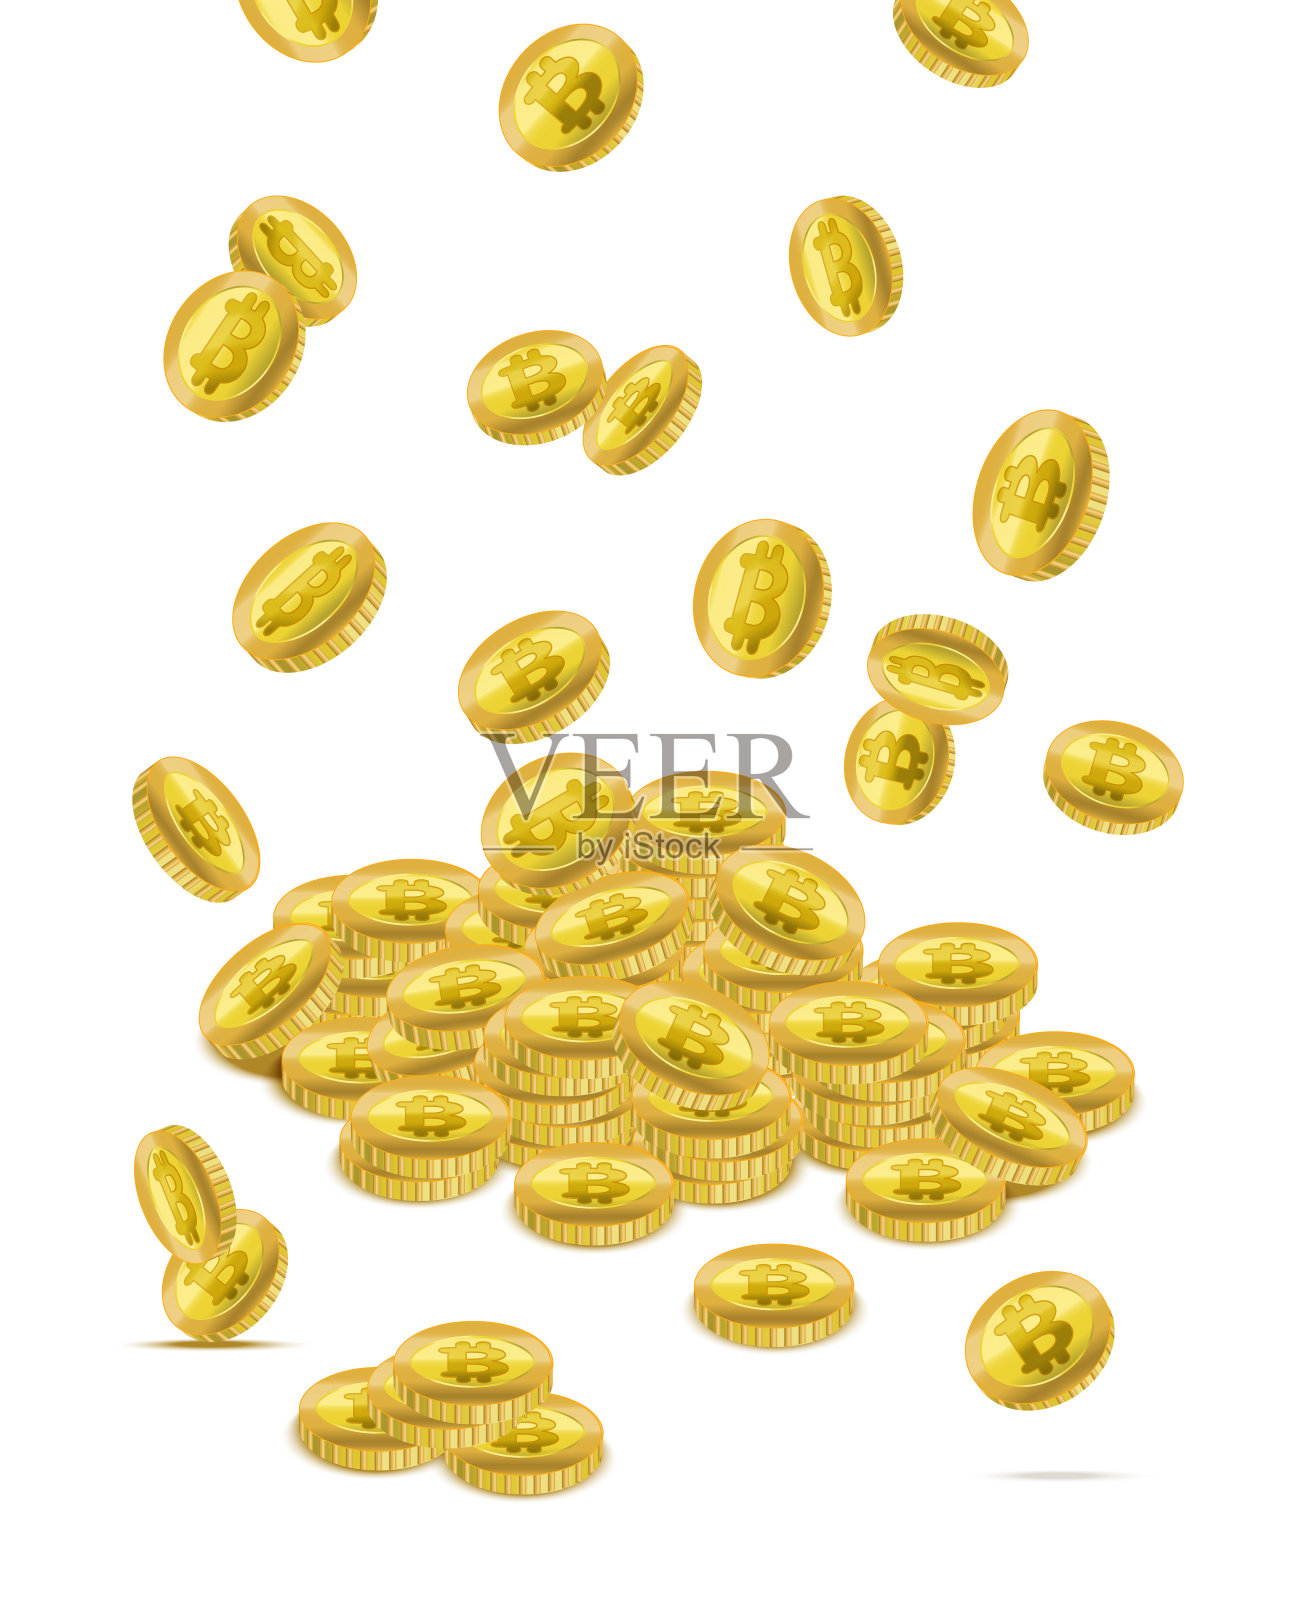 逼真详细的3d黄金比特币不同类型的下落。向量插画图片素材